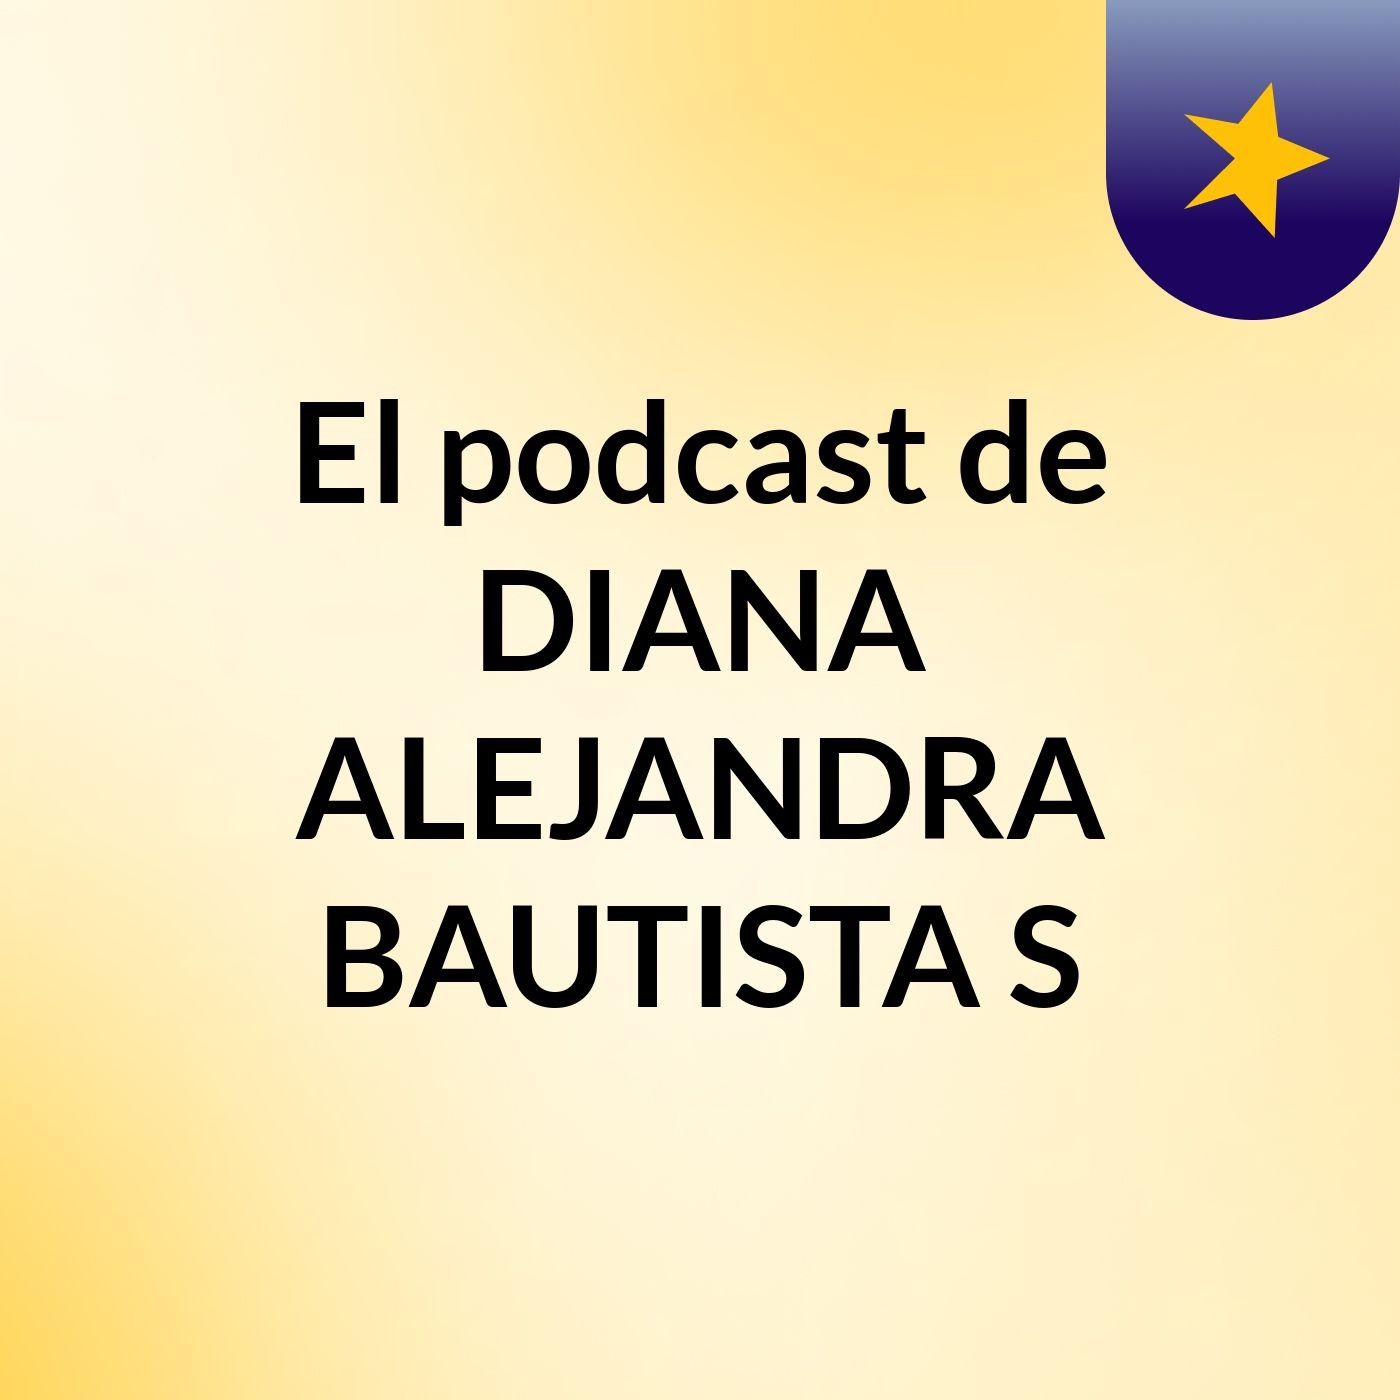 El podcast de DIANA ALEJANDRA BAUTISTA S